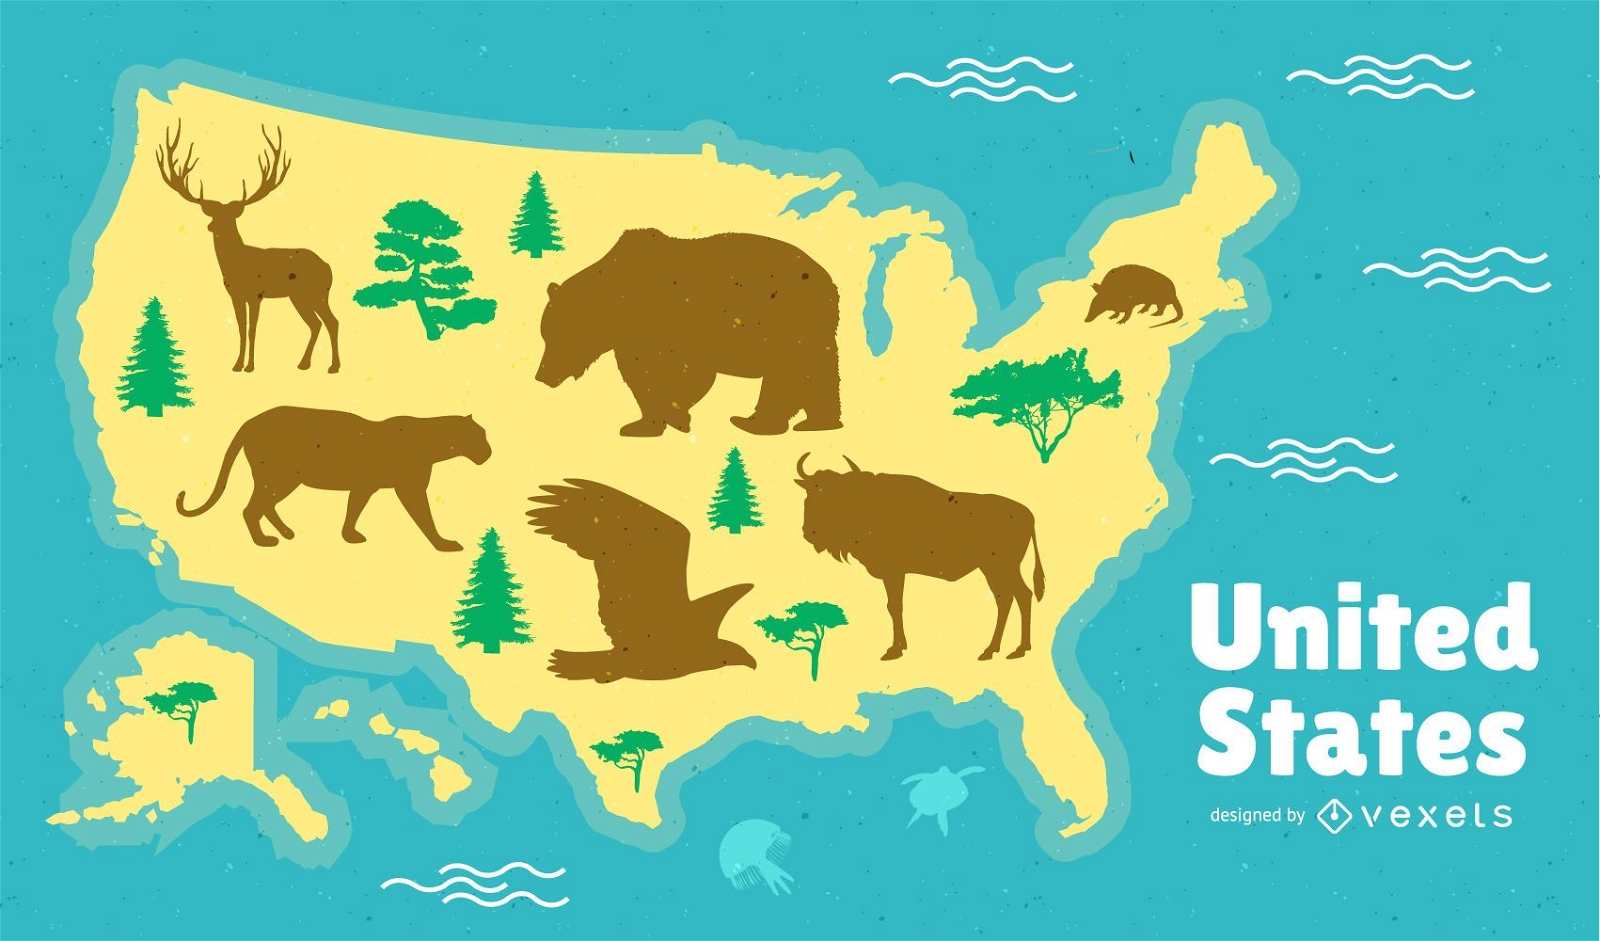 United States Map Design 